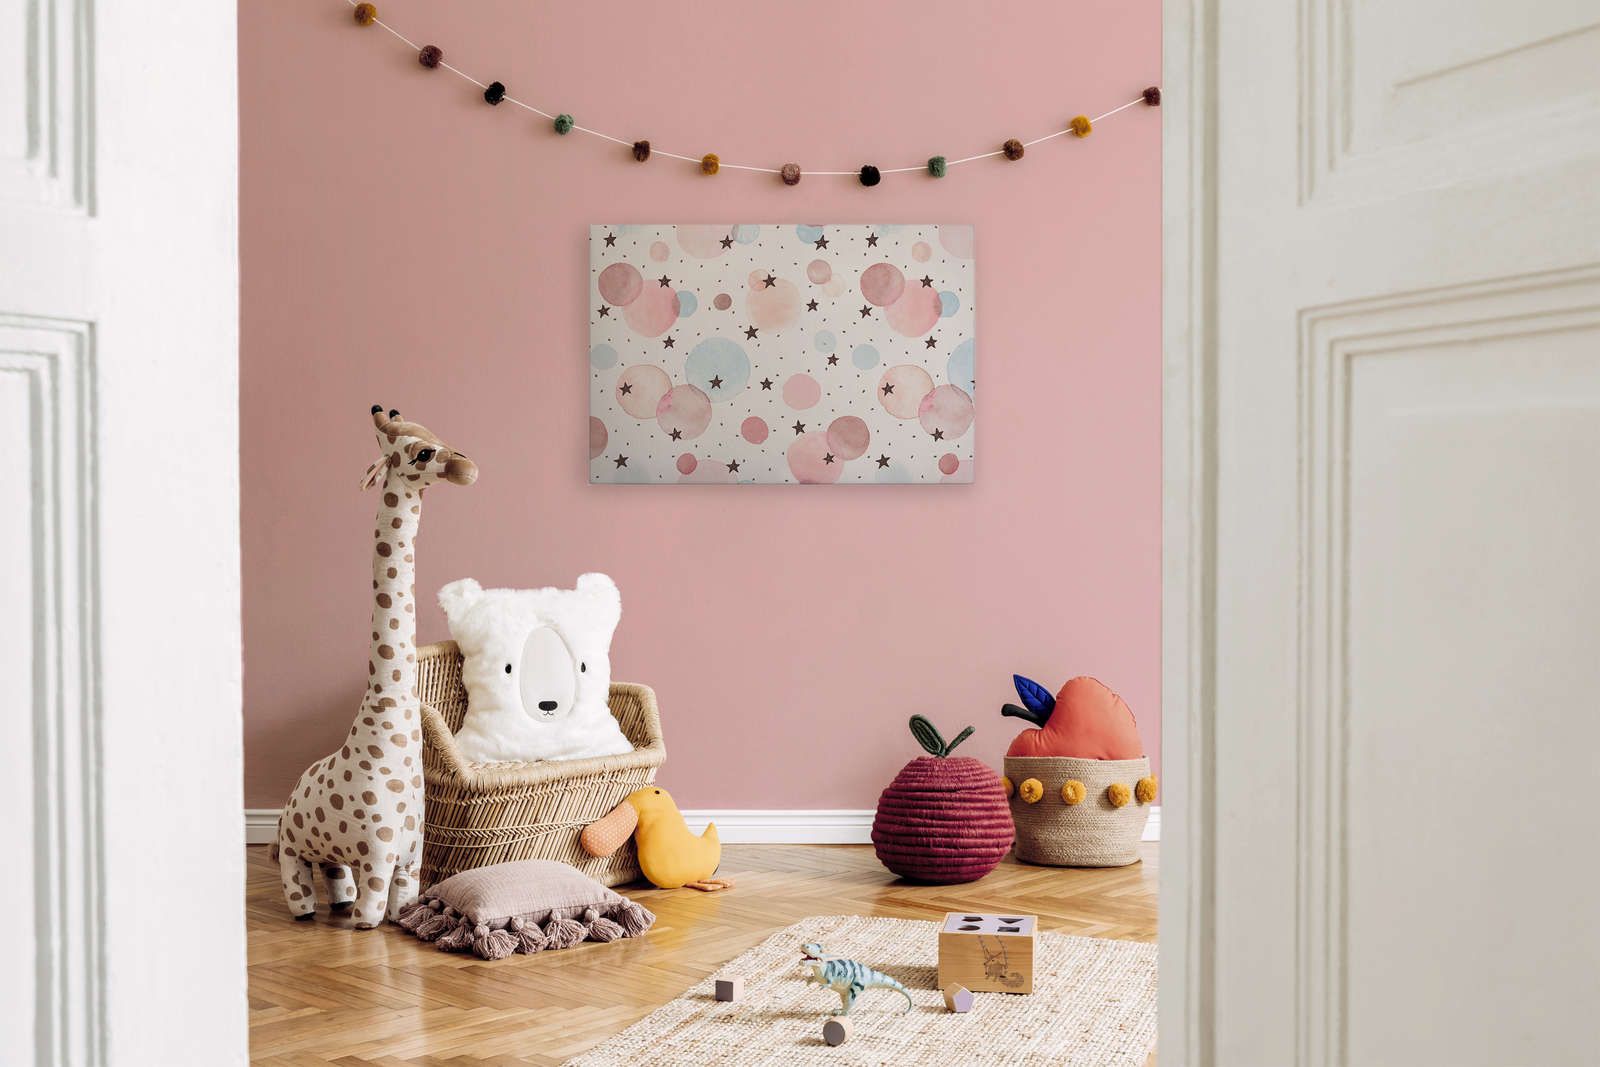             Toile pour chambre d'enfant avec étoiles, points et cercles - 90 cm x 60 cm
        